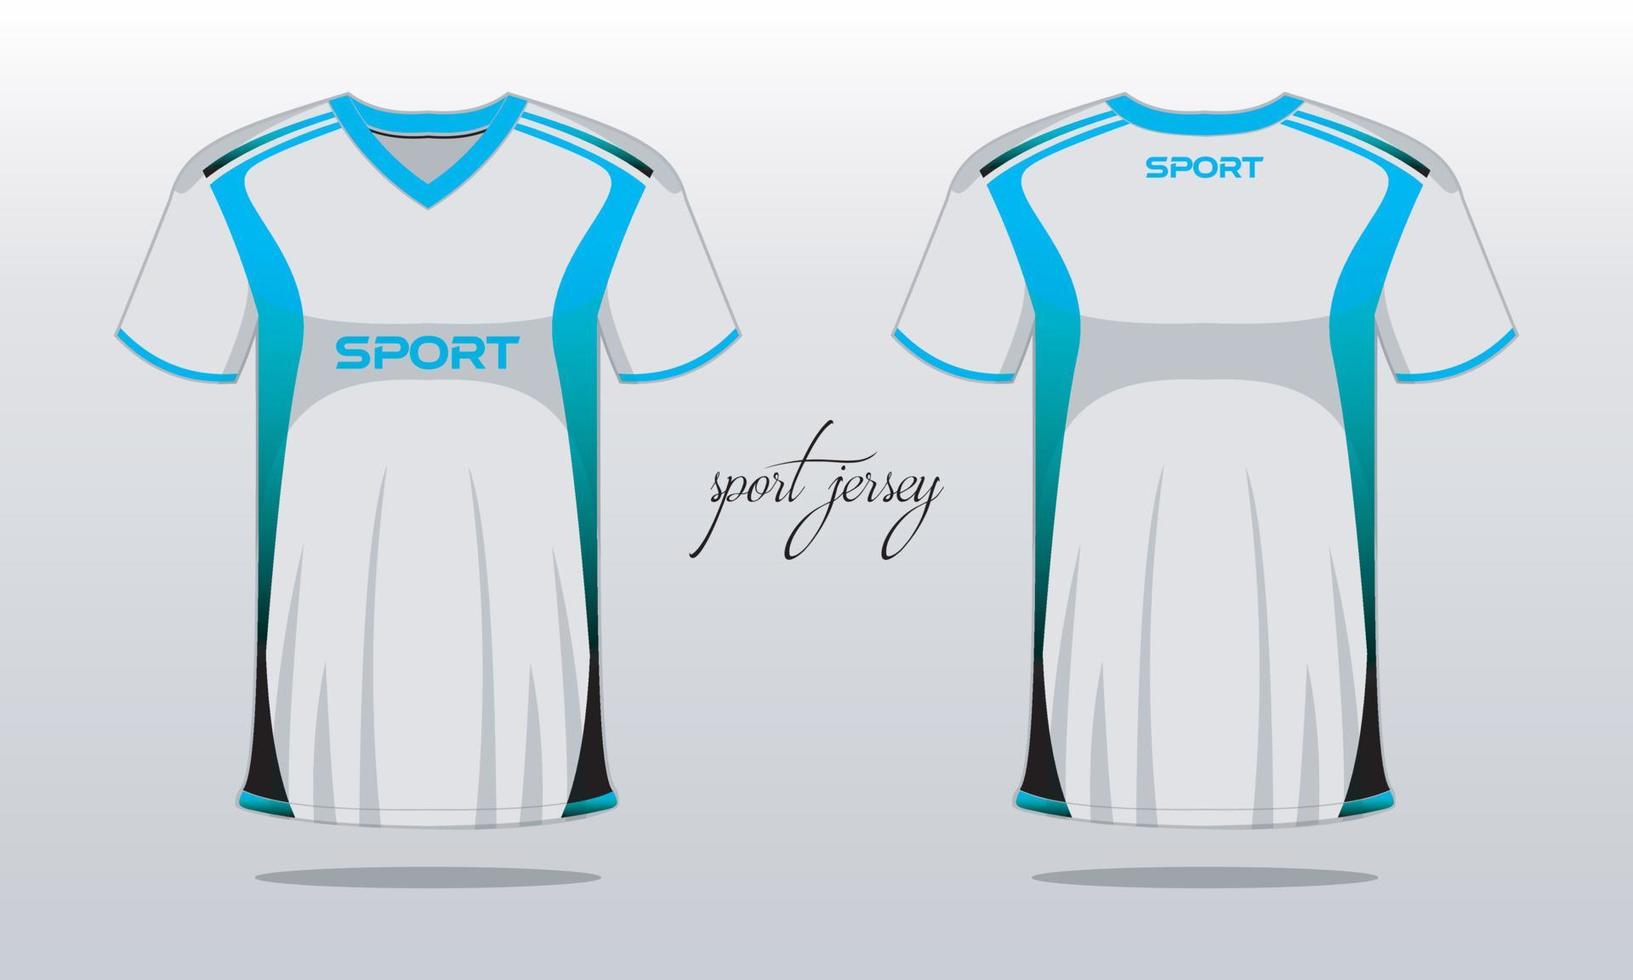 camiseta deportiva y plantilla de camiseta diseño de camiseta deportiva. diseño deportivo para juegos de carreras de fútbol vector